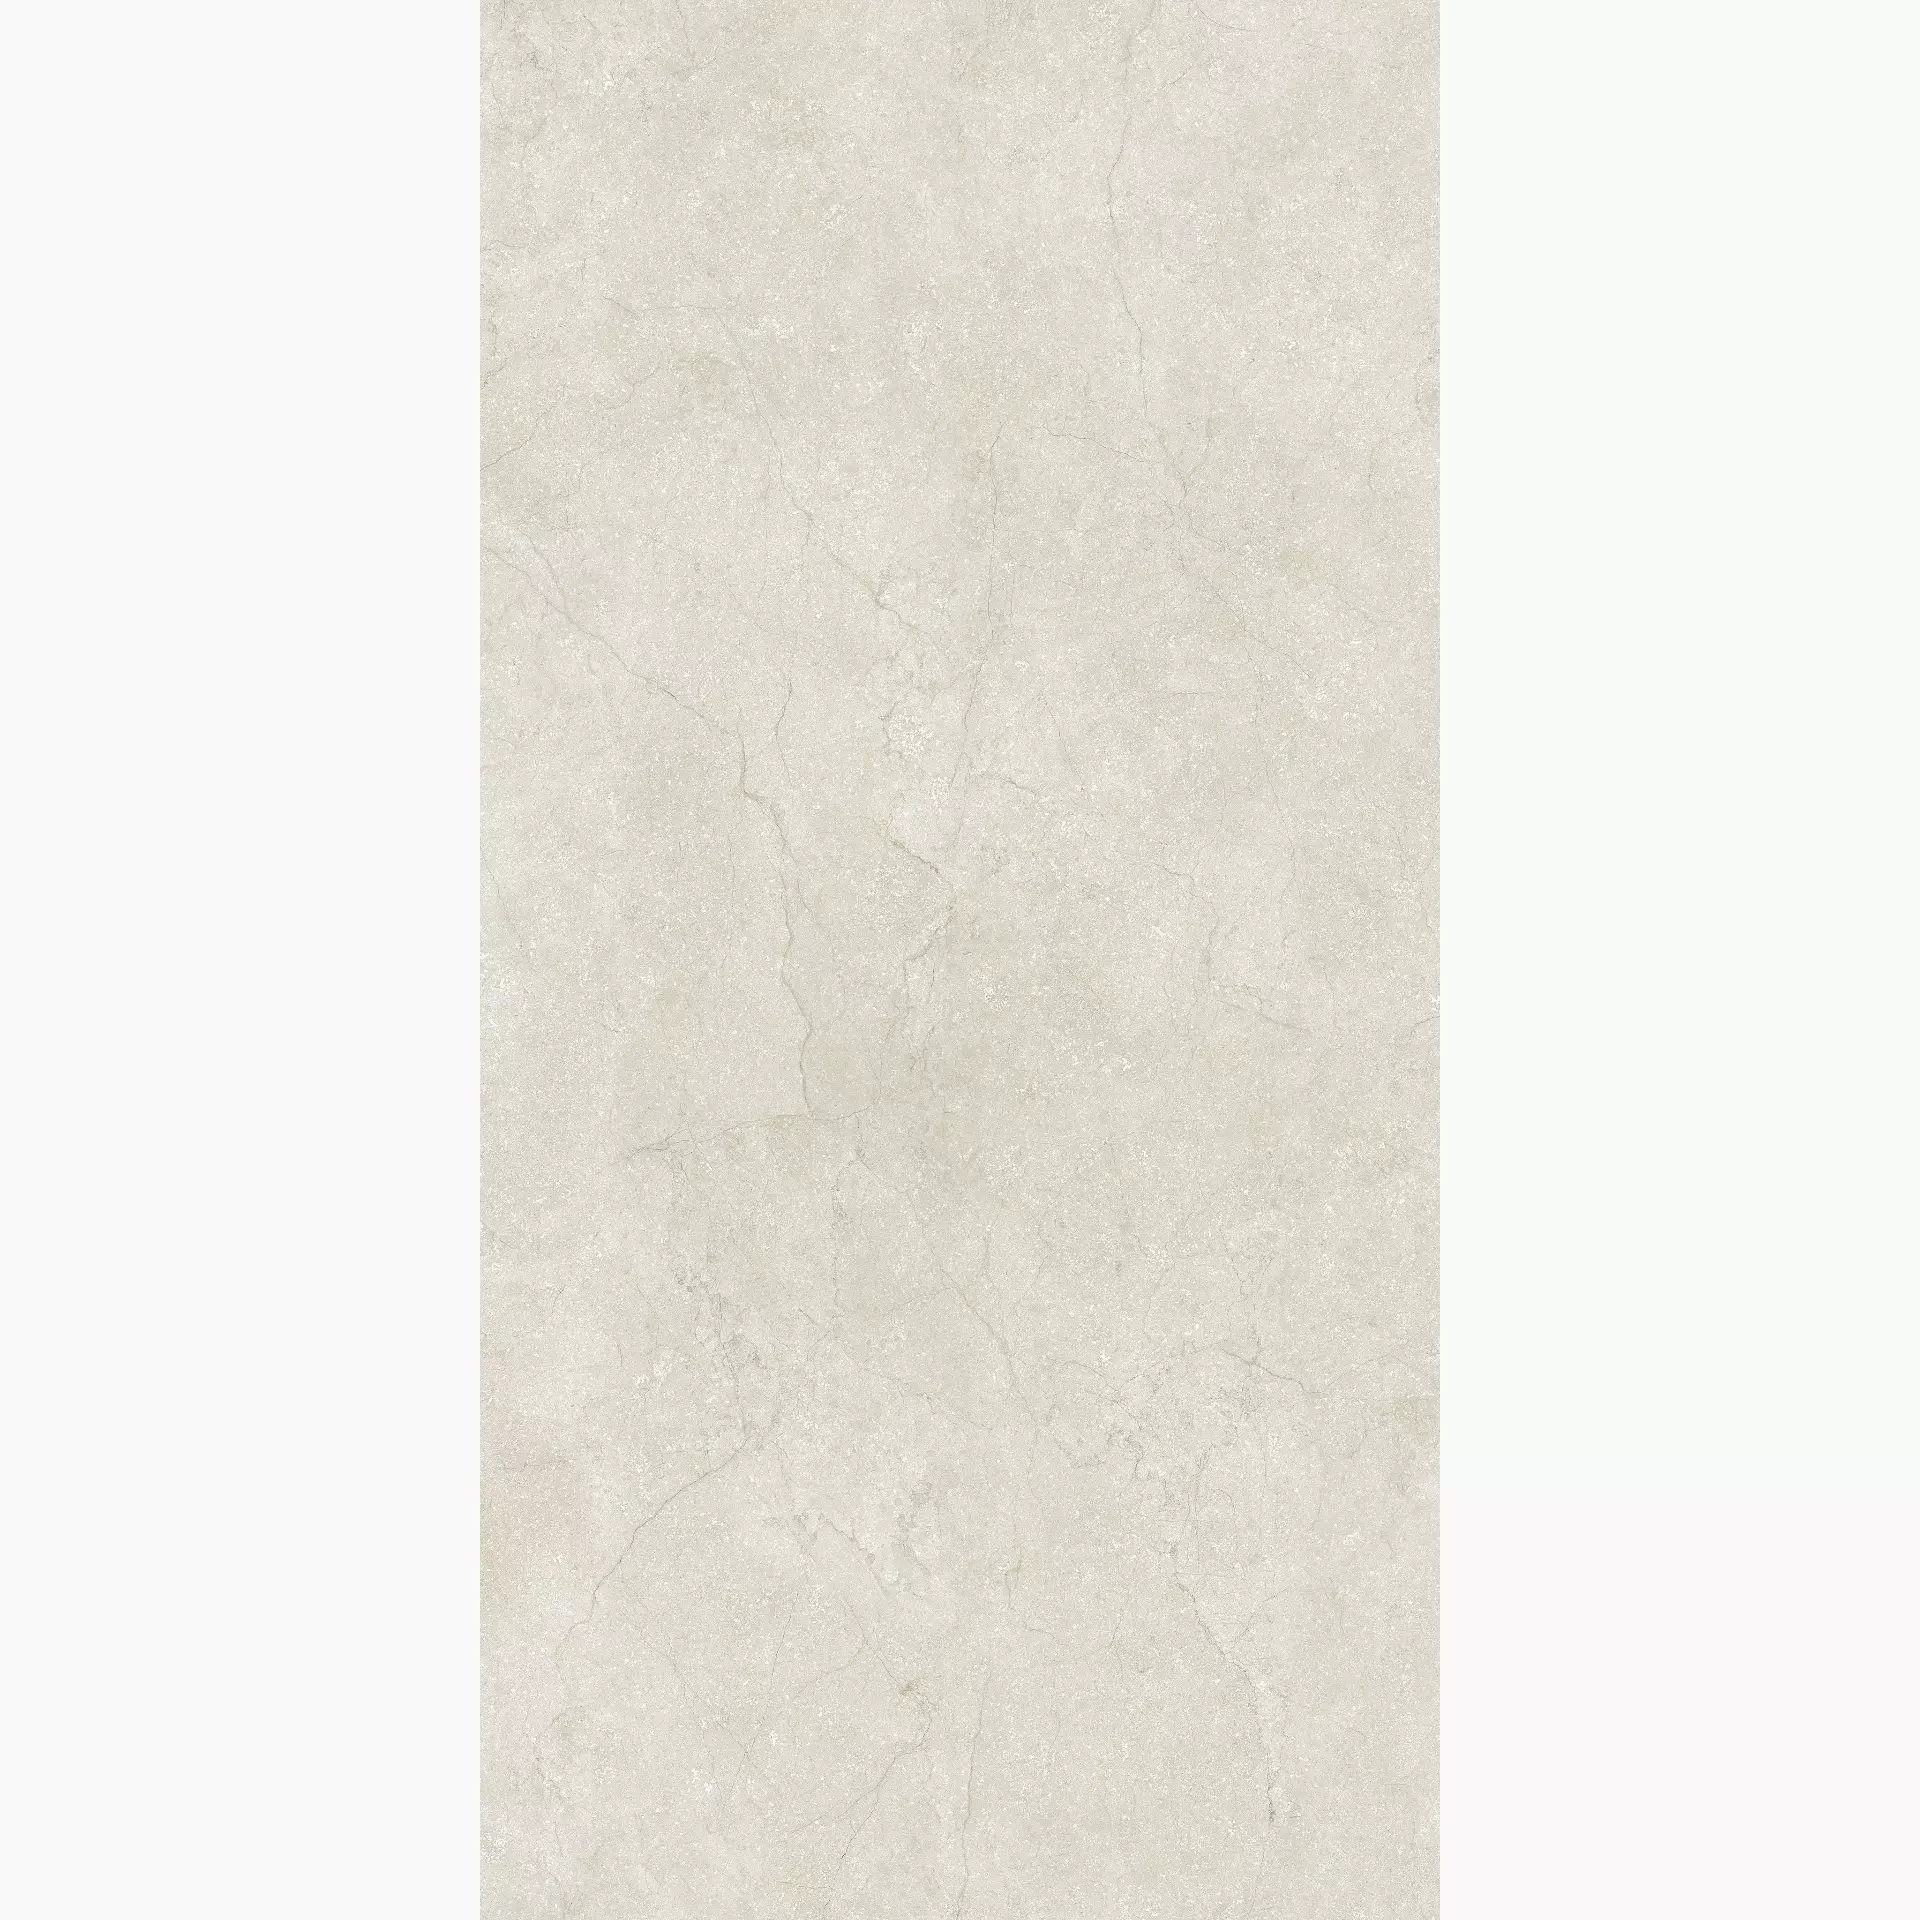 Florim Stone Life Cotton Naturale – Matt Cotton 779201 matt natur 120x240cm rektifiziert 6mm